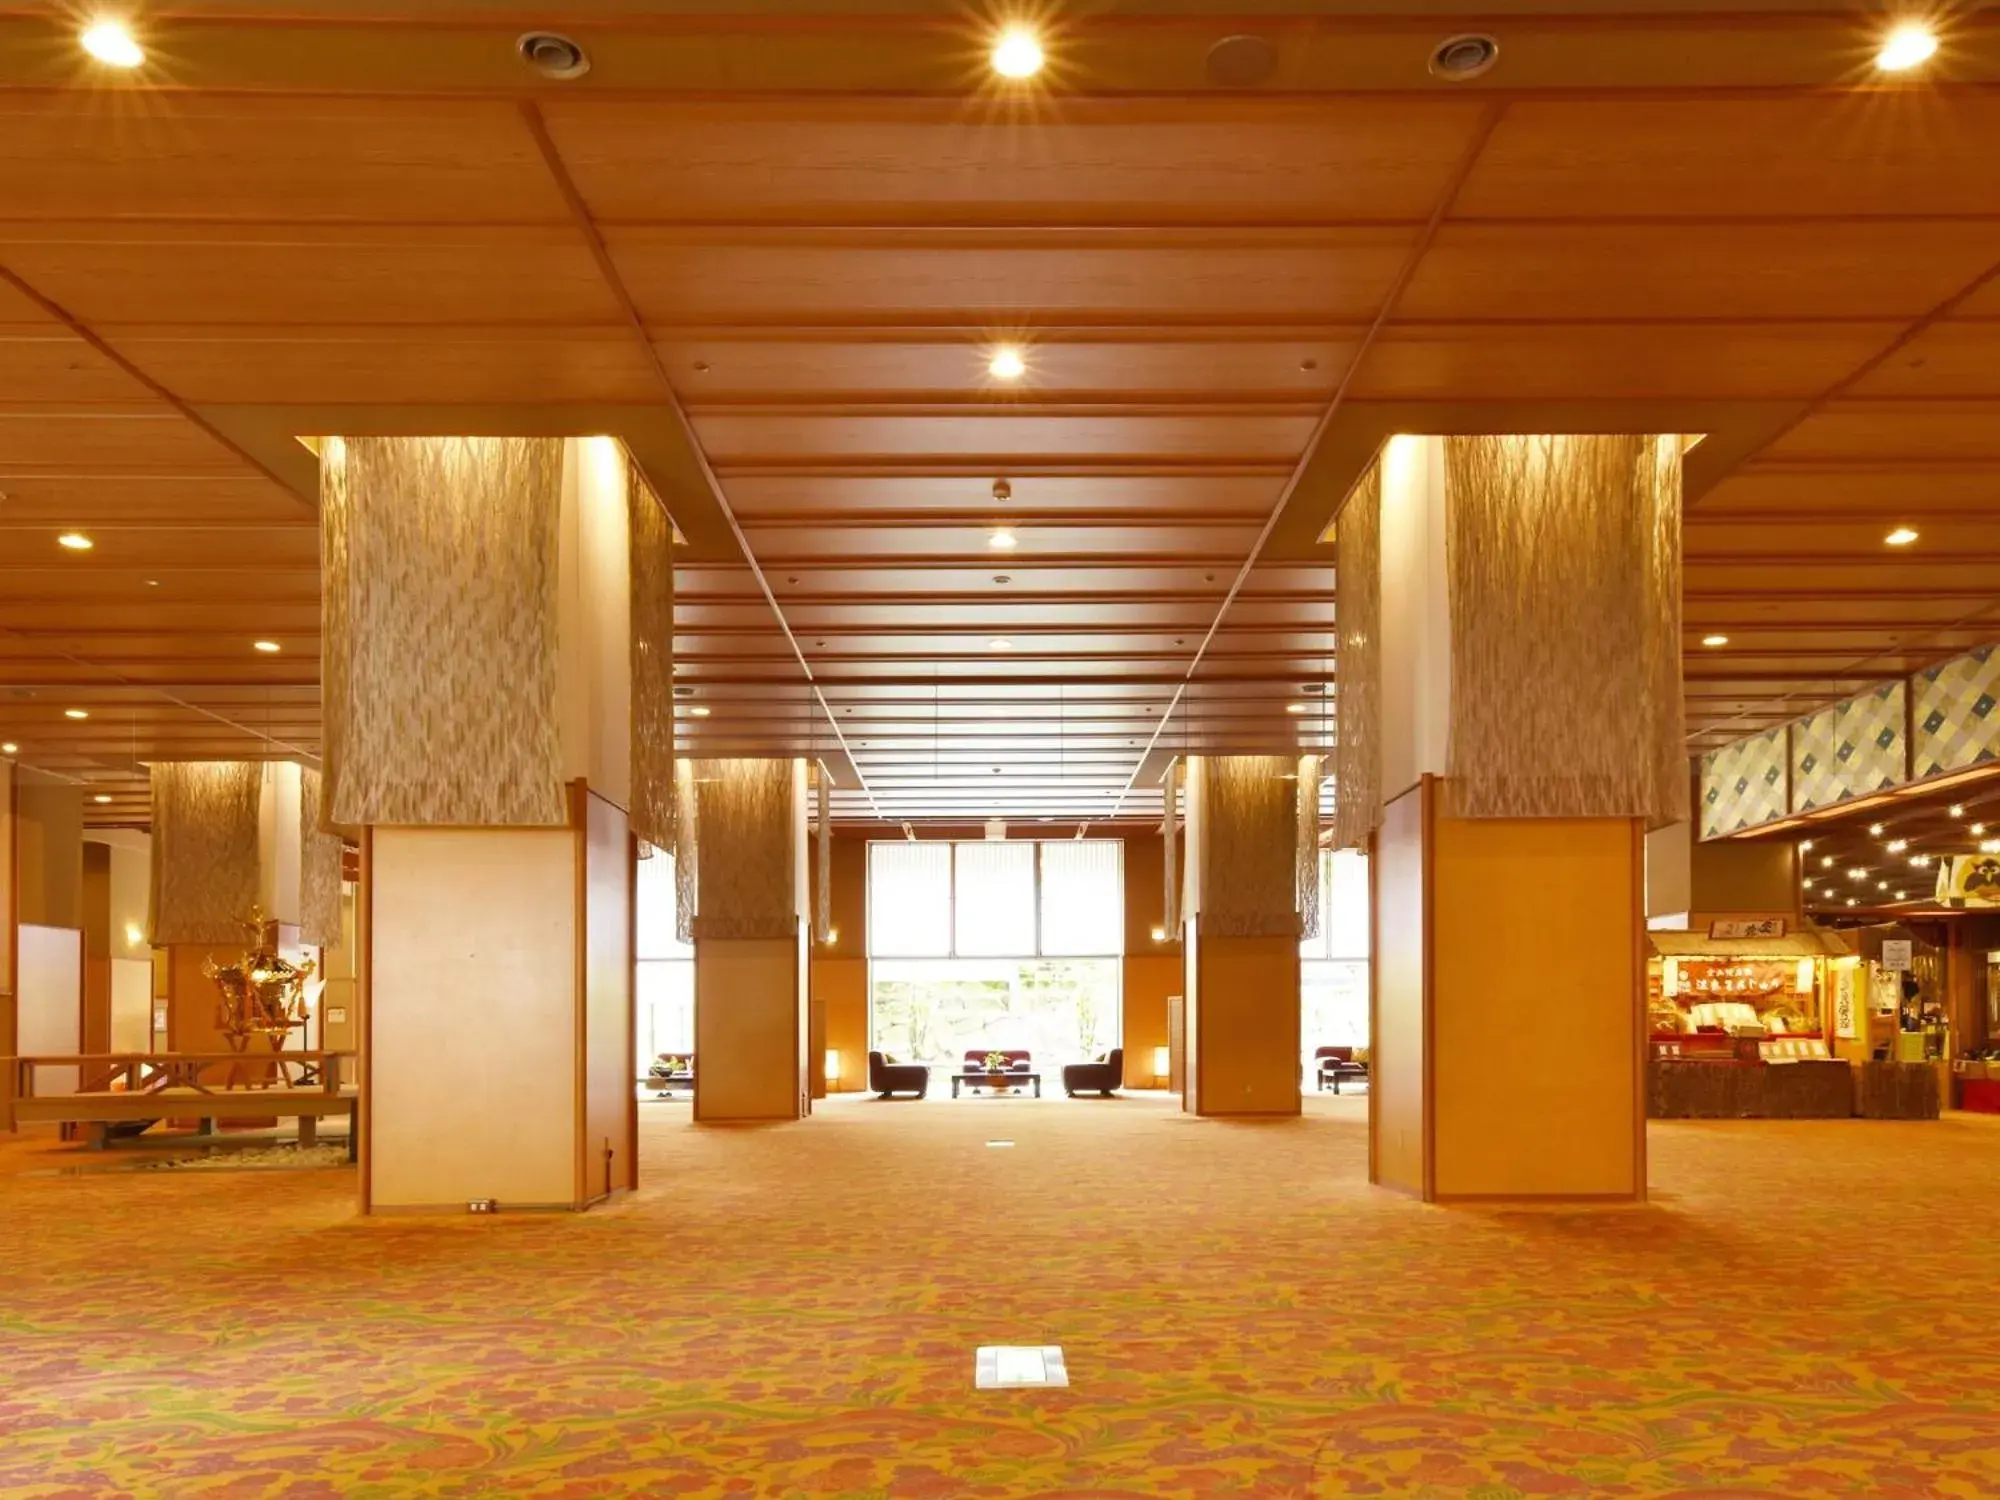 Lobby or reception in Hana Momiji